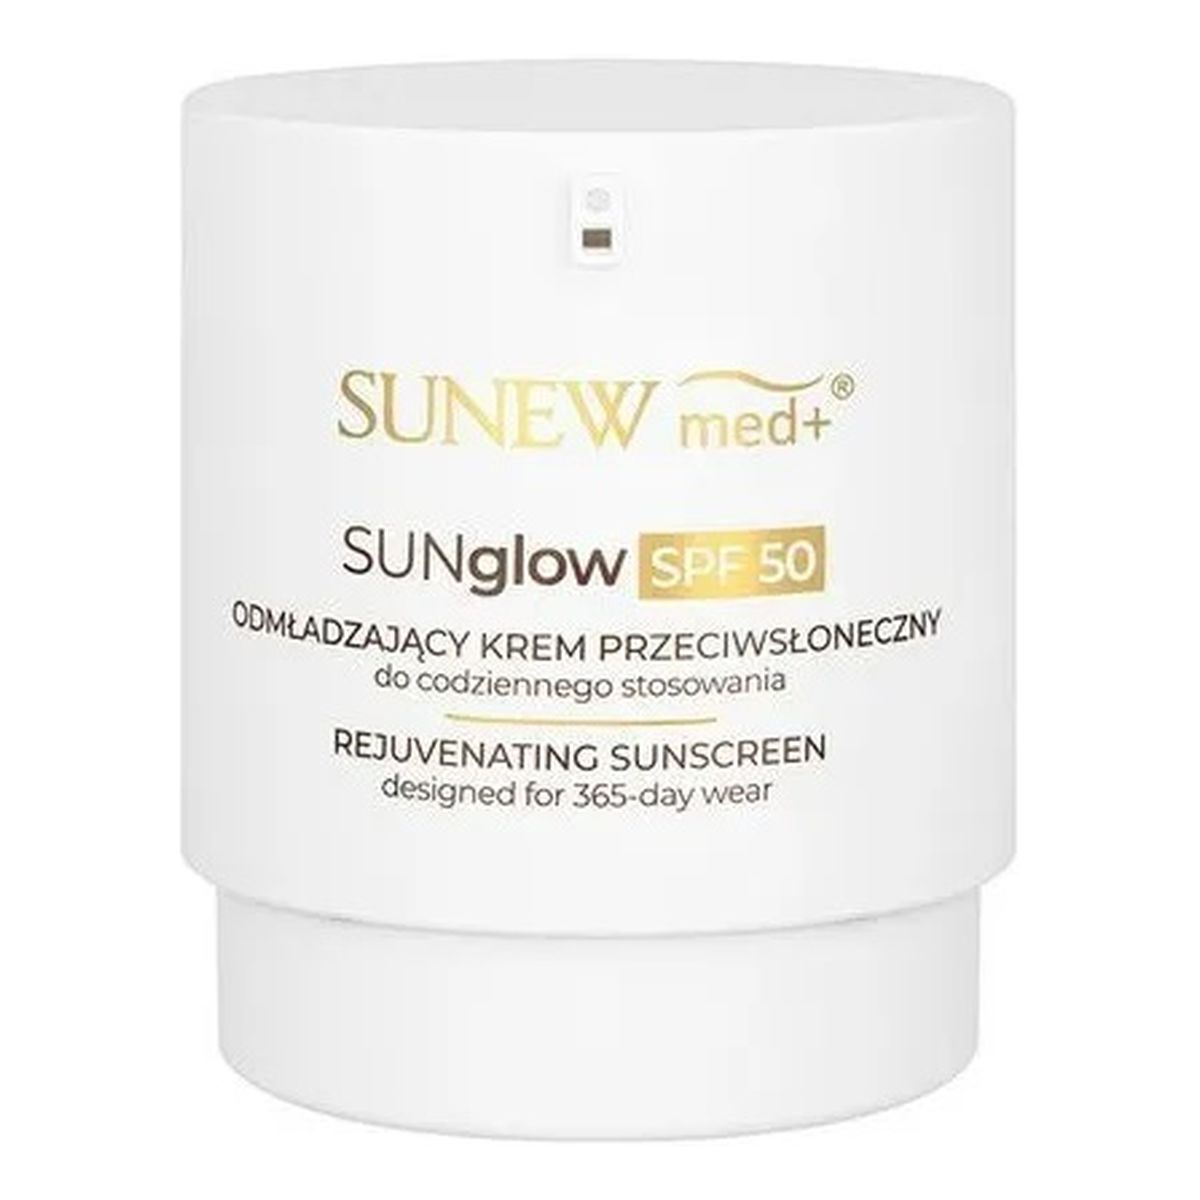 SunewMed+ SUNglow SPF50 Rejuvenating Sunscreen odmładzający Krem przeciwsłoneczny 80ml